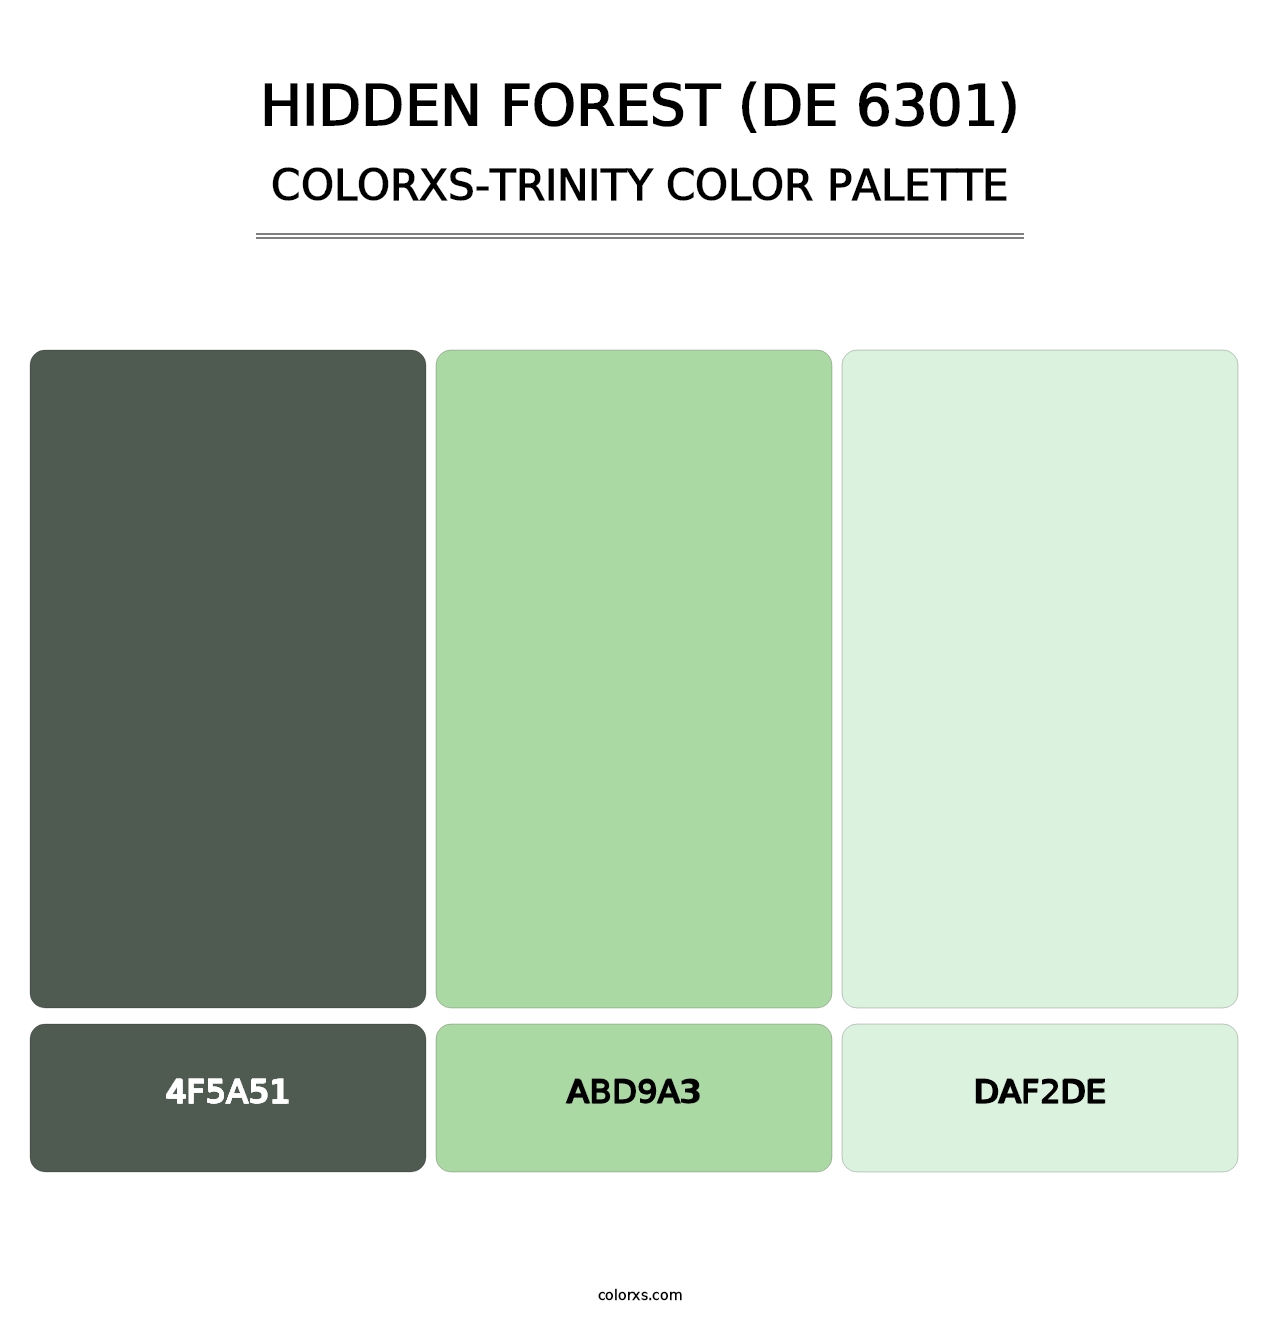 Hidden Forest (DE 6301) - Colorxs Trinity Palette